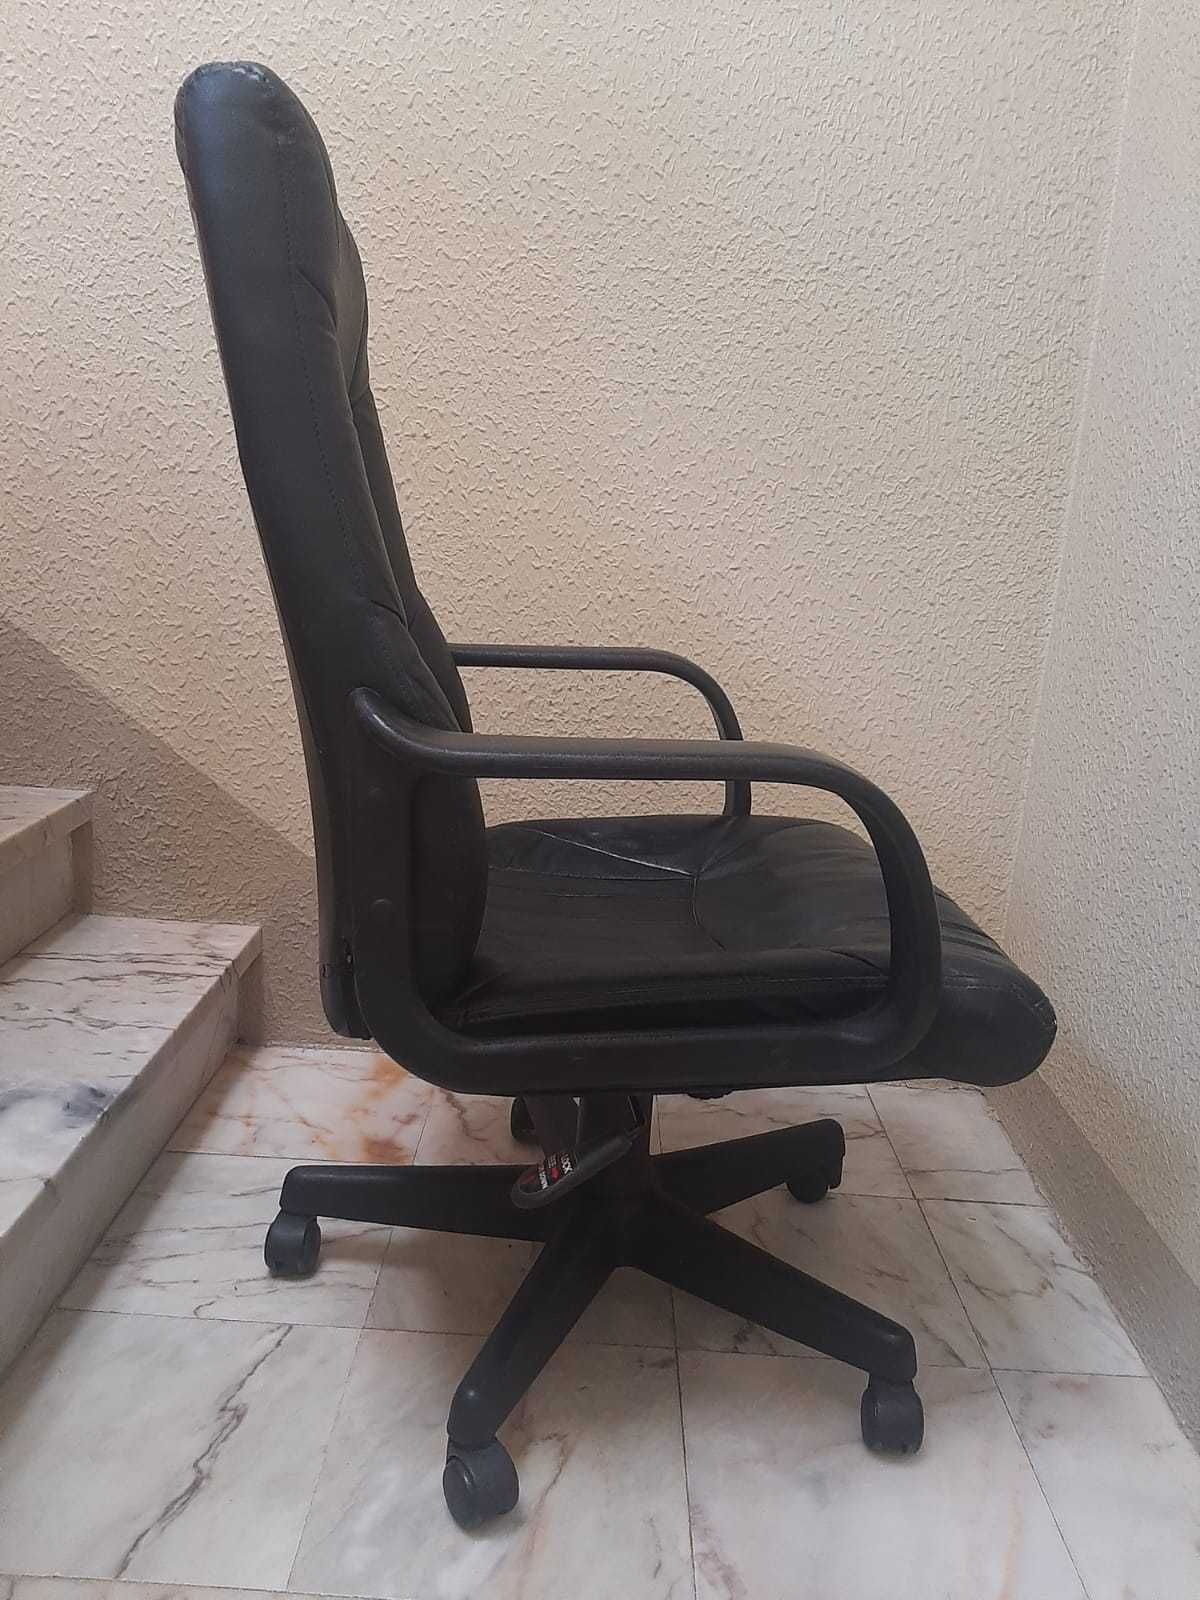 Cadeira preta de escritório (secretária)_Oportunidade